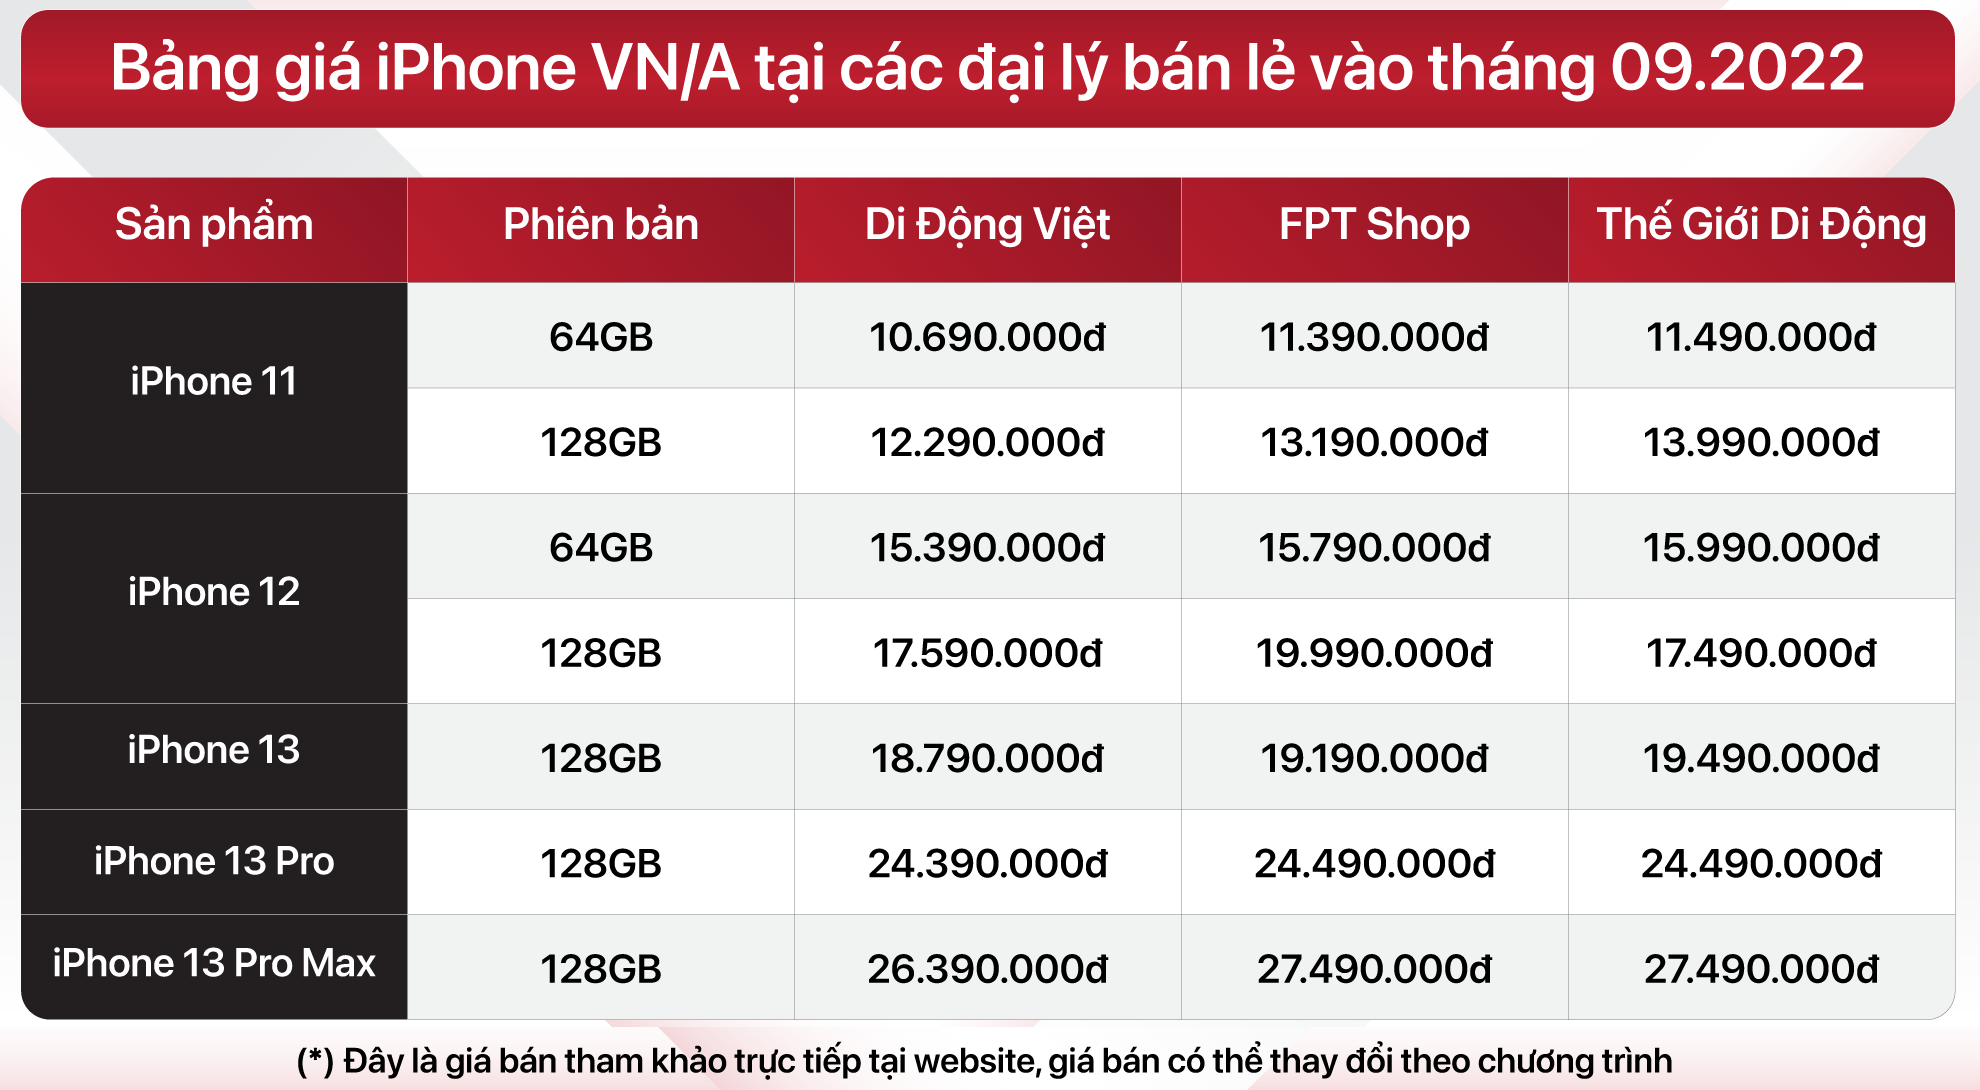 Bang-gia-iPhone-VN_A-tai-cac-dai-ly-ban-l-thang-9_2022.png